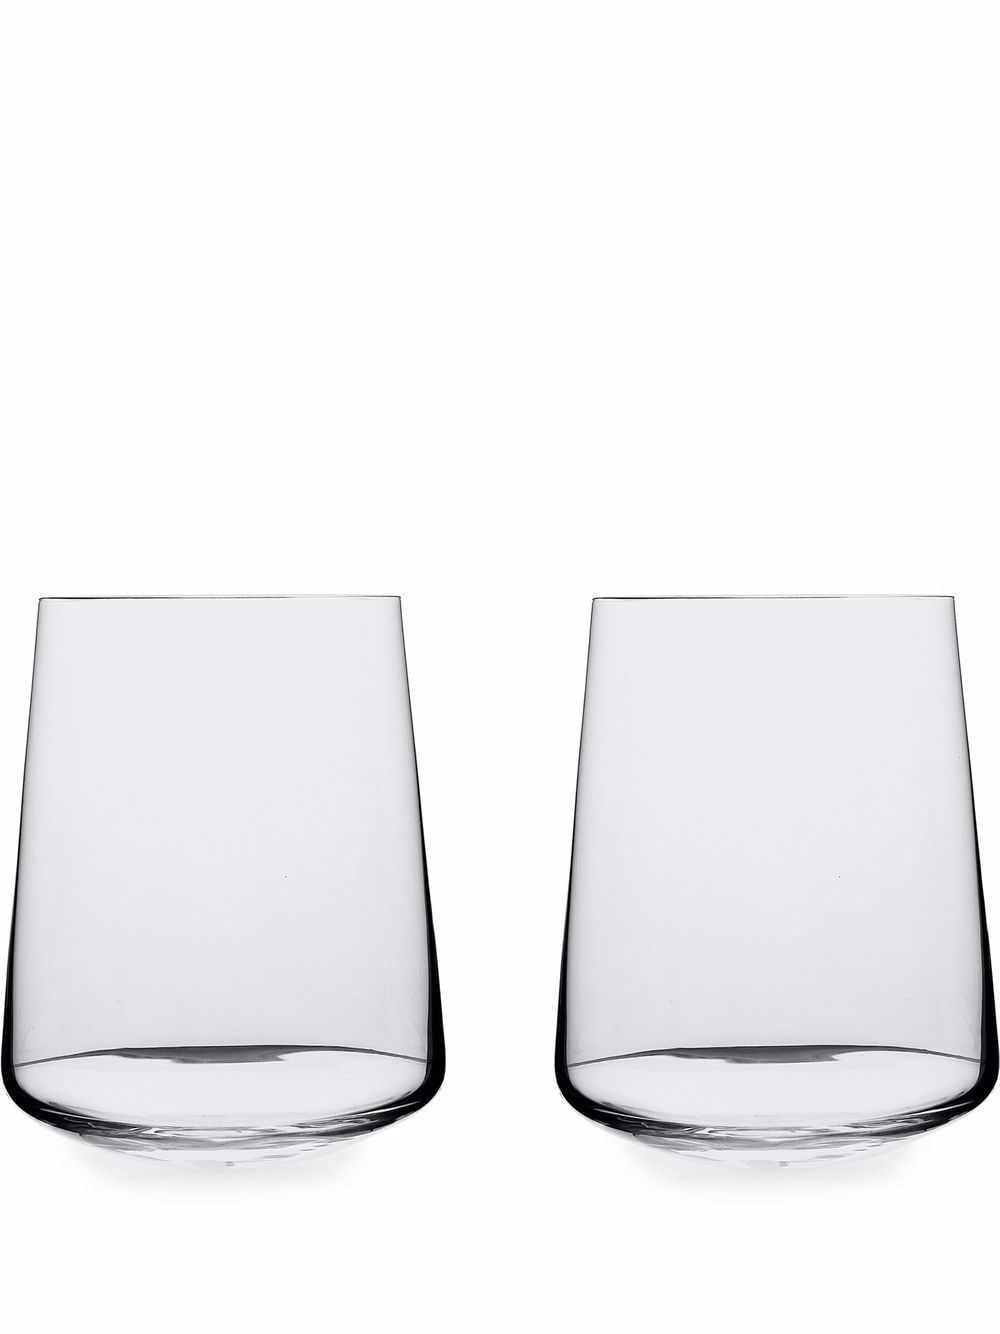 Ichendorf Milano Stand Up 2 piece wine glass - White von Ichendorf Milano